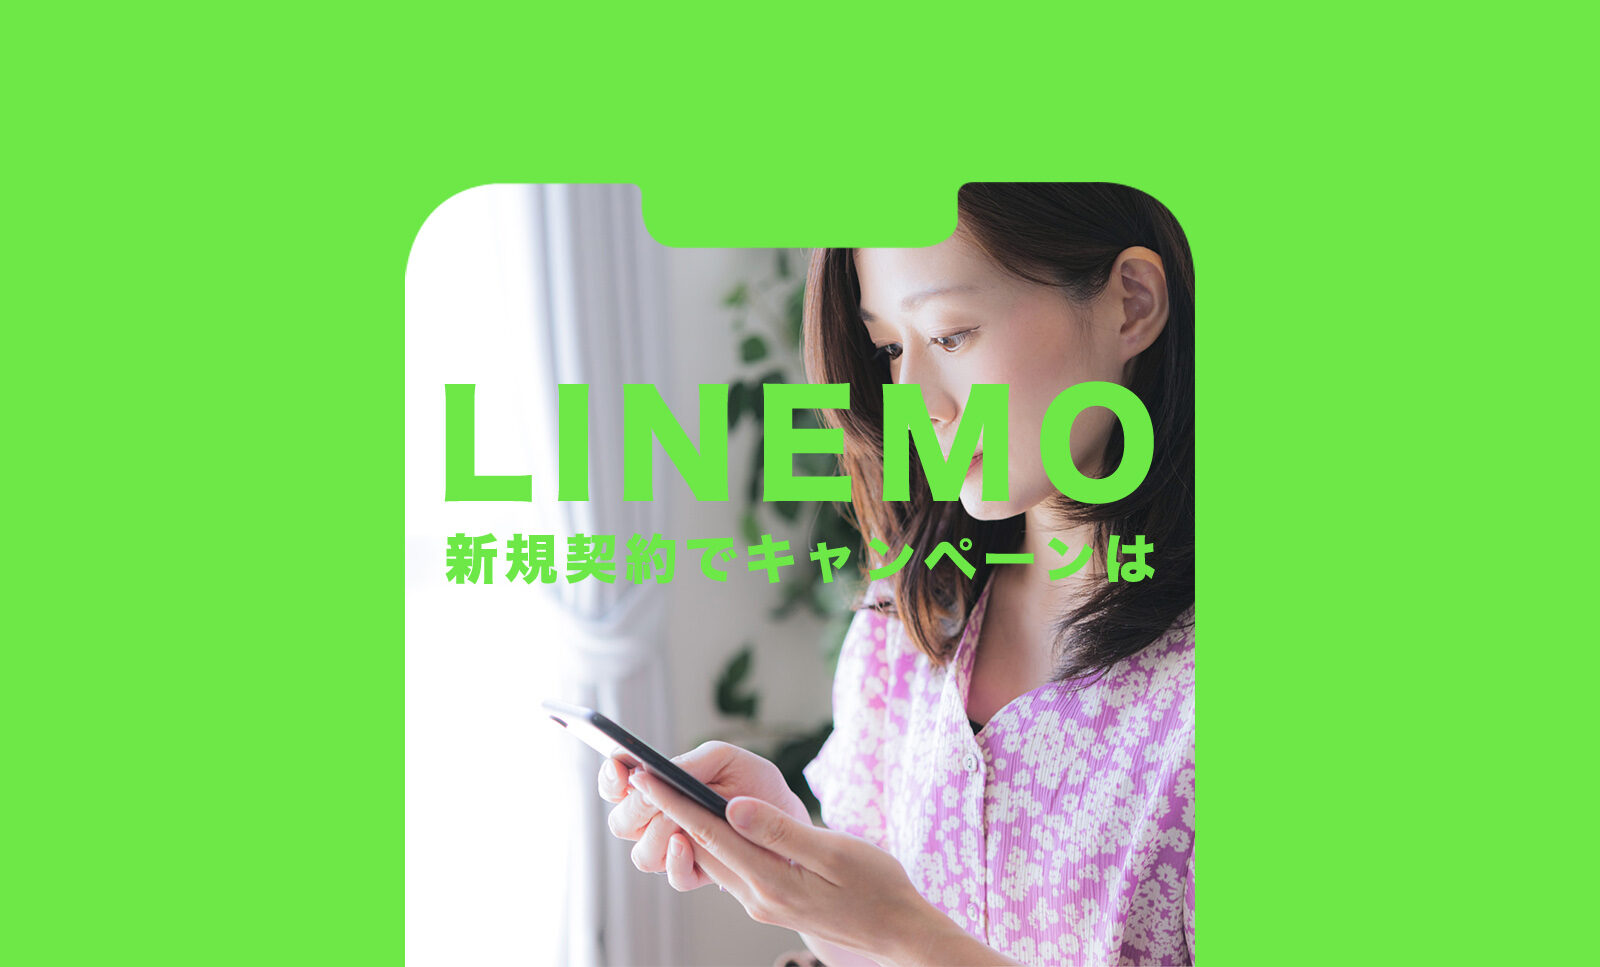 LINEMO(ラインモ)のキャンペーンで3000円相当分が新規契約でもらえる詳細を解説！のサムネイル画像